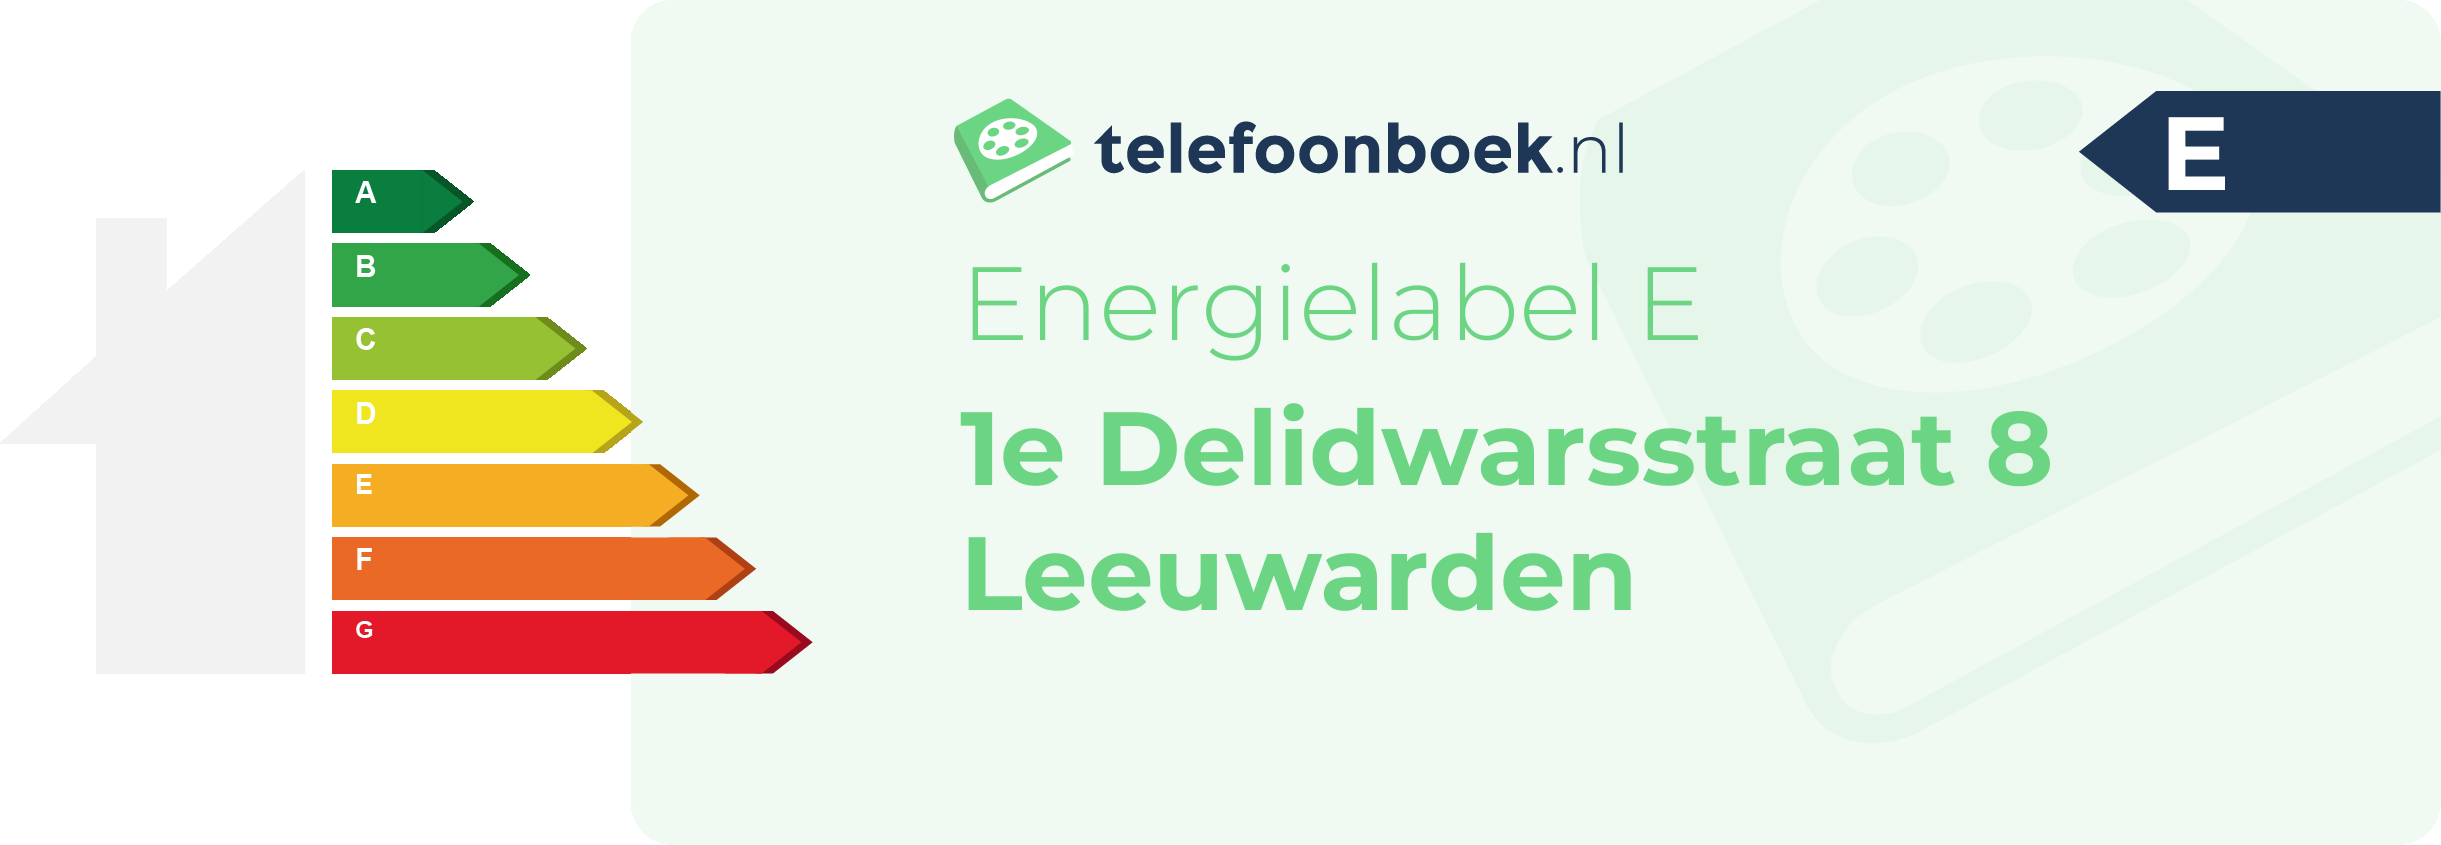 Energielabel 1e Delidwarsstraat 8 Leeuwarden